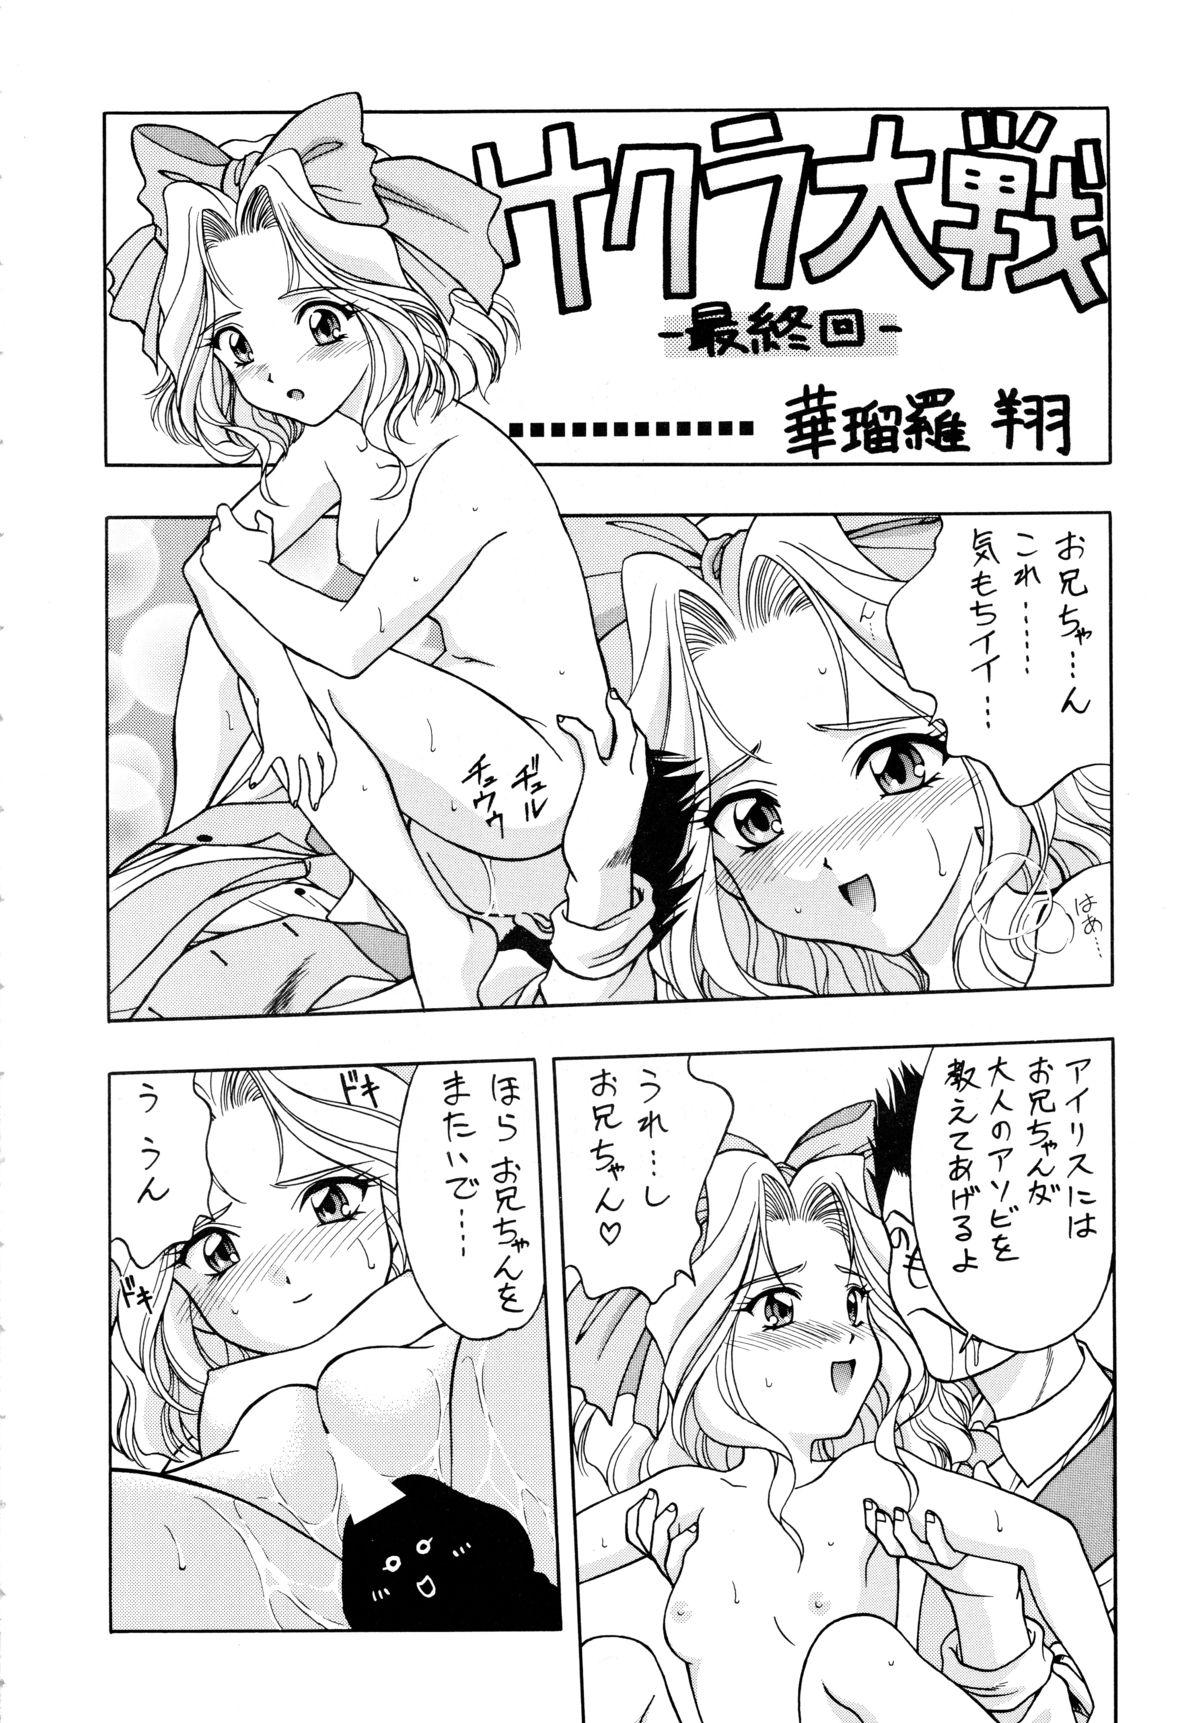 Kitchen LOVE² BREATH - Sakura taisen Martian successor nadesico Tokimeki memorial Youre under arrest Webcamchat - Page 4